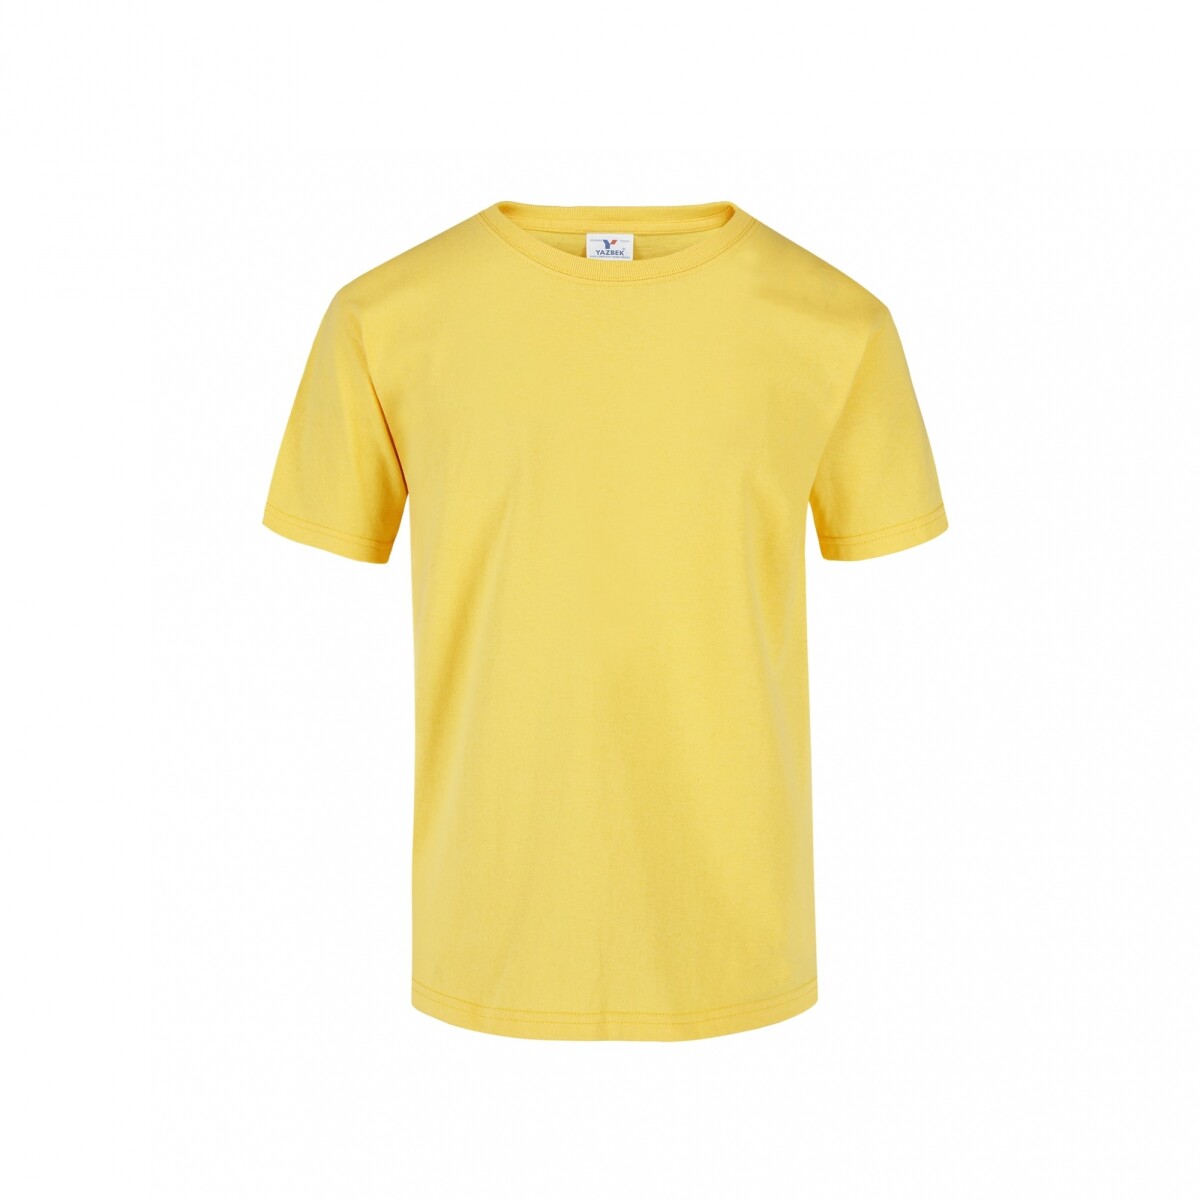 Camiseta a la base niño - Amarillo canario 